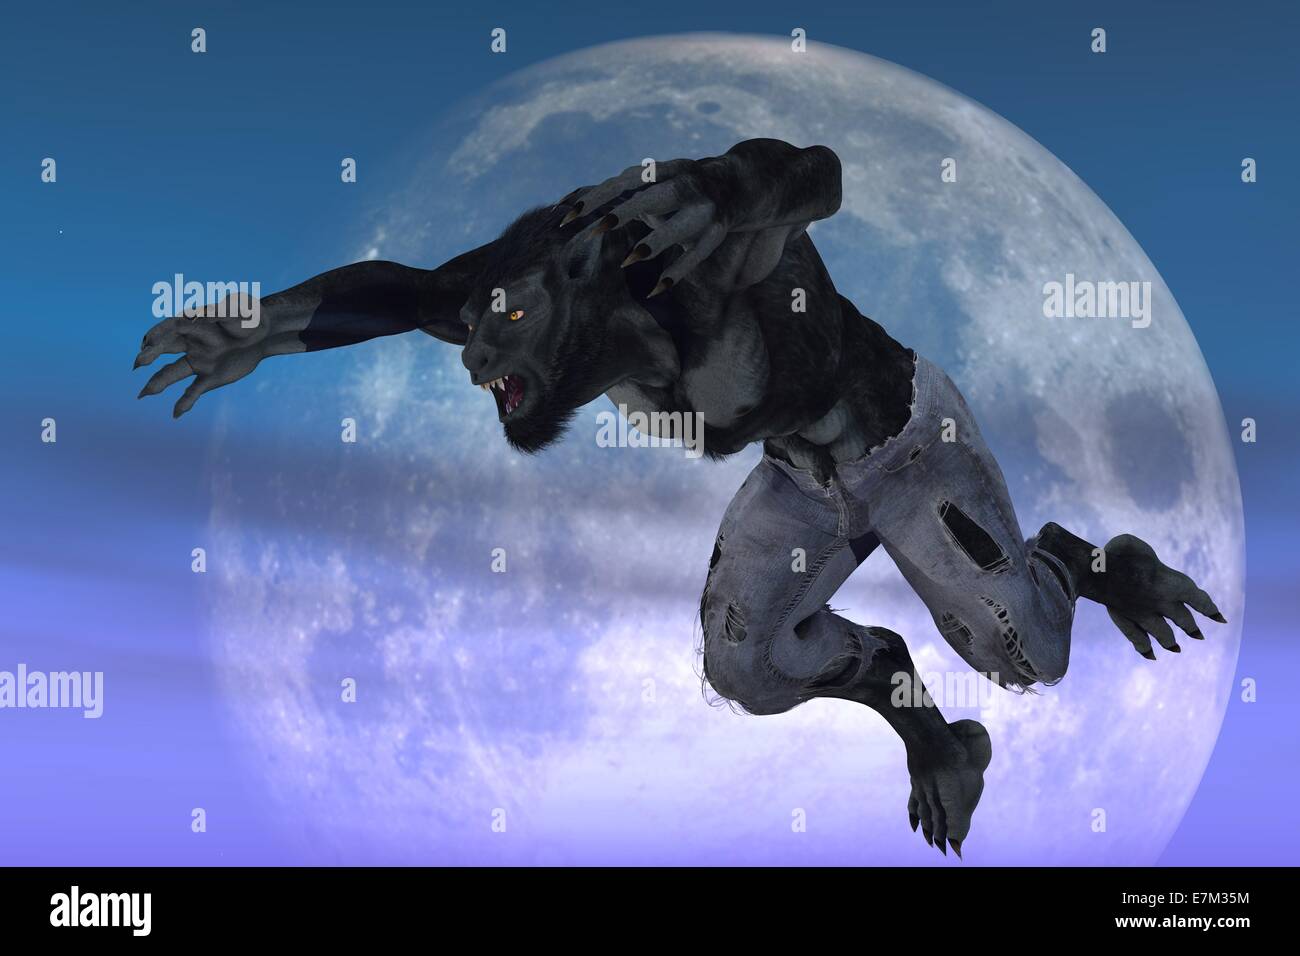 Werwolf in zerfetzten Jeans im Sprung Pose vor Mond Hintergrund Stockfoto